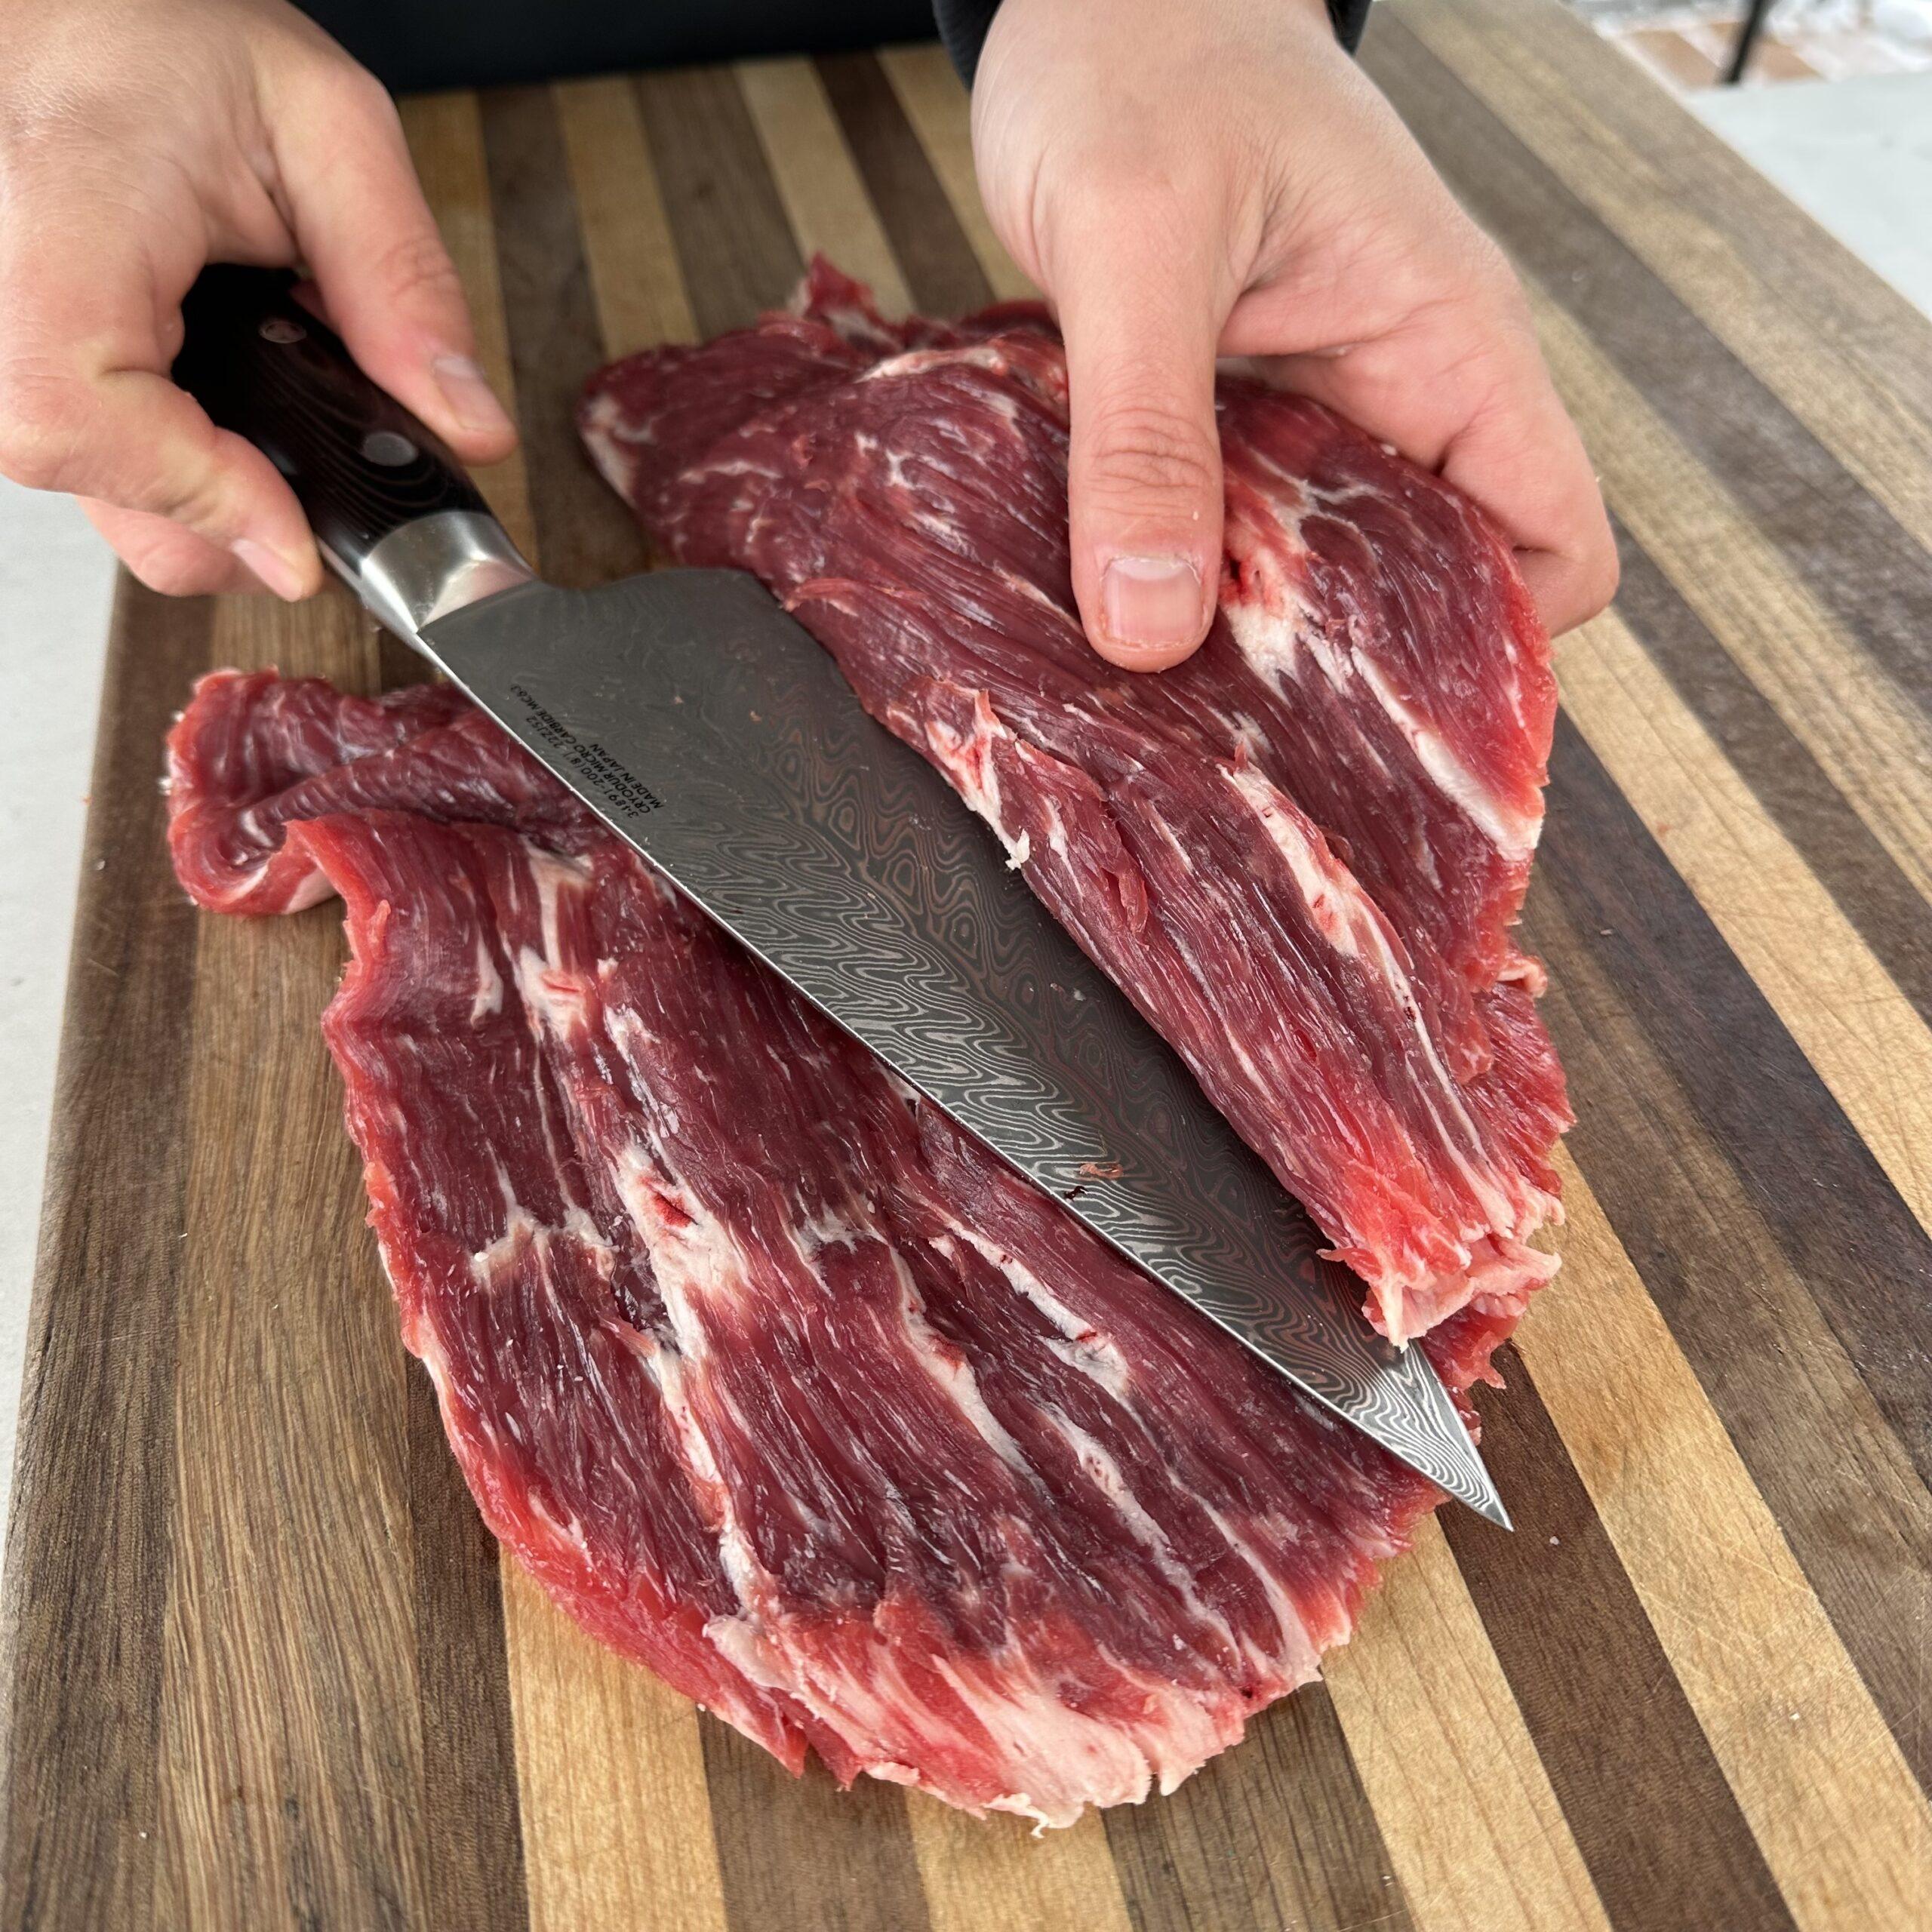 Steak slicing